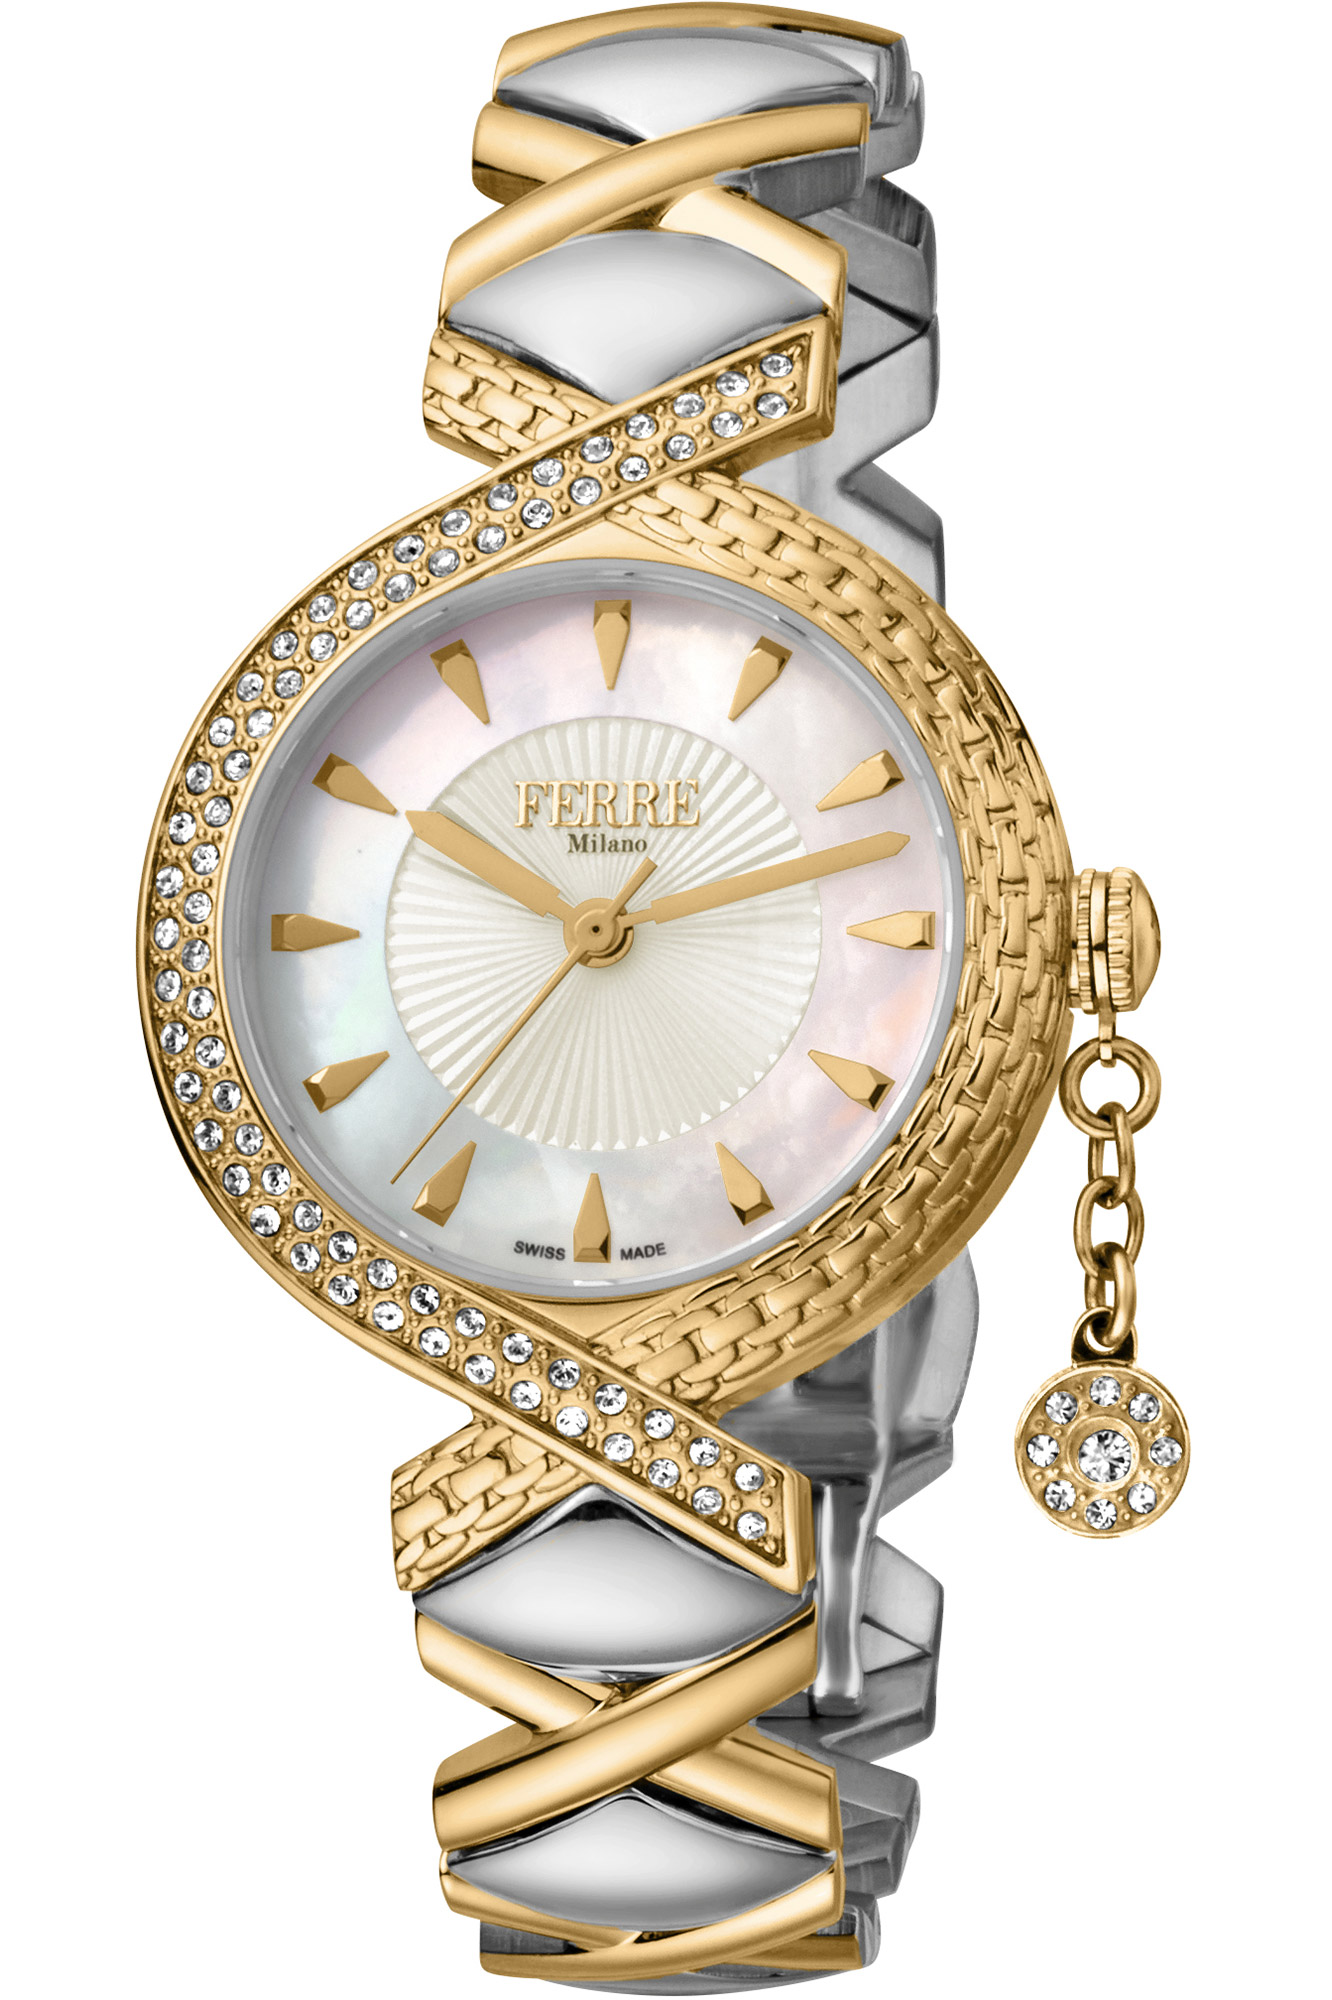 Reloj Ferrè Milano Lady fm1l122m0051